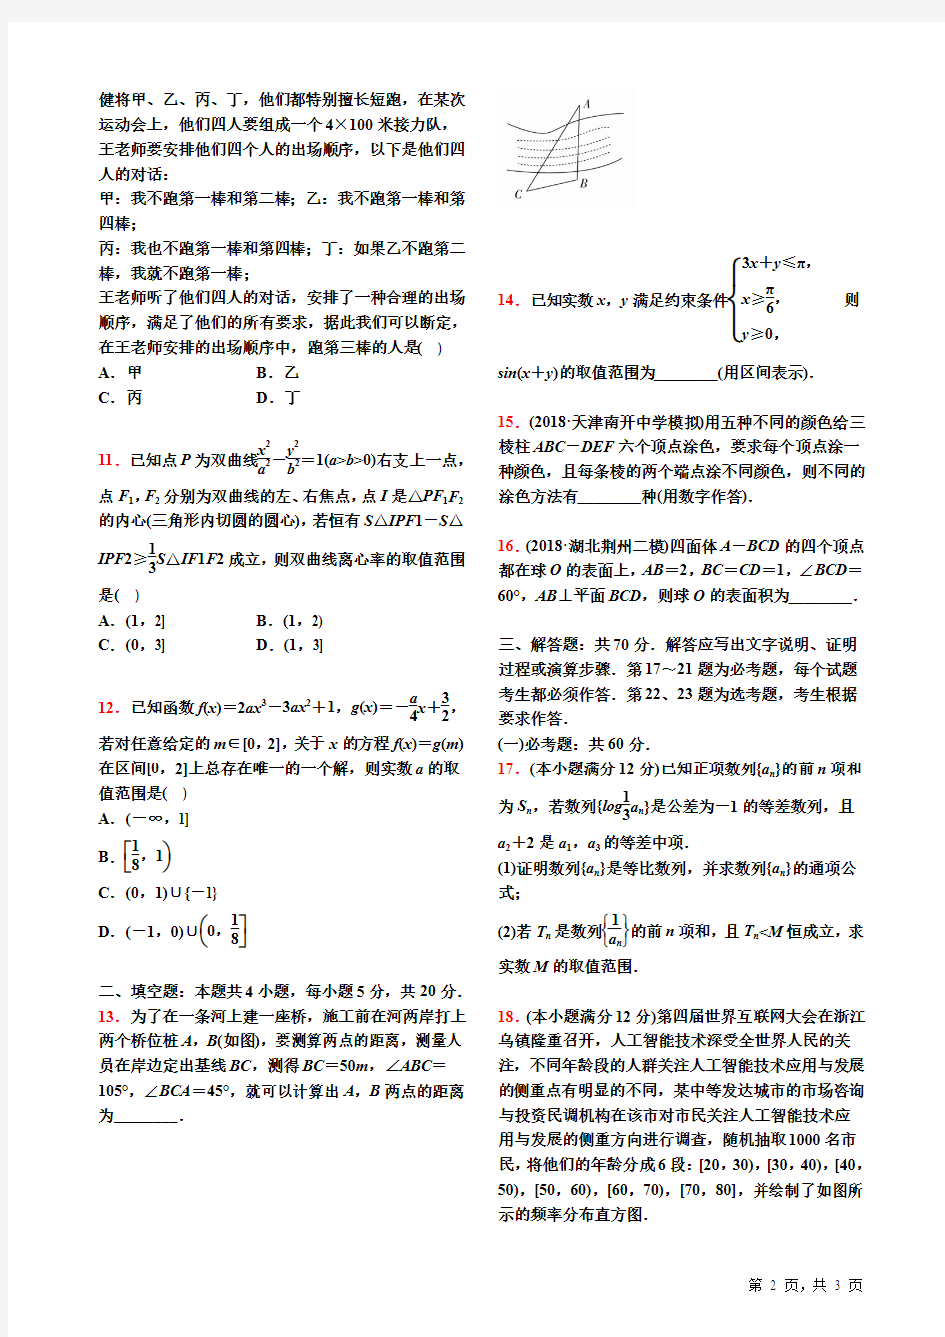 2019高考仿真模拟卷(三)高考数学